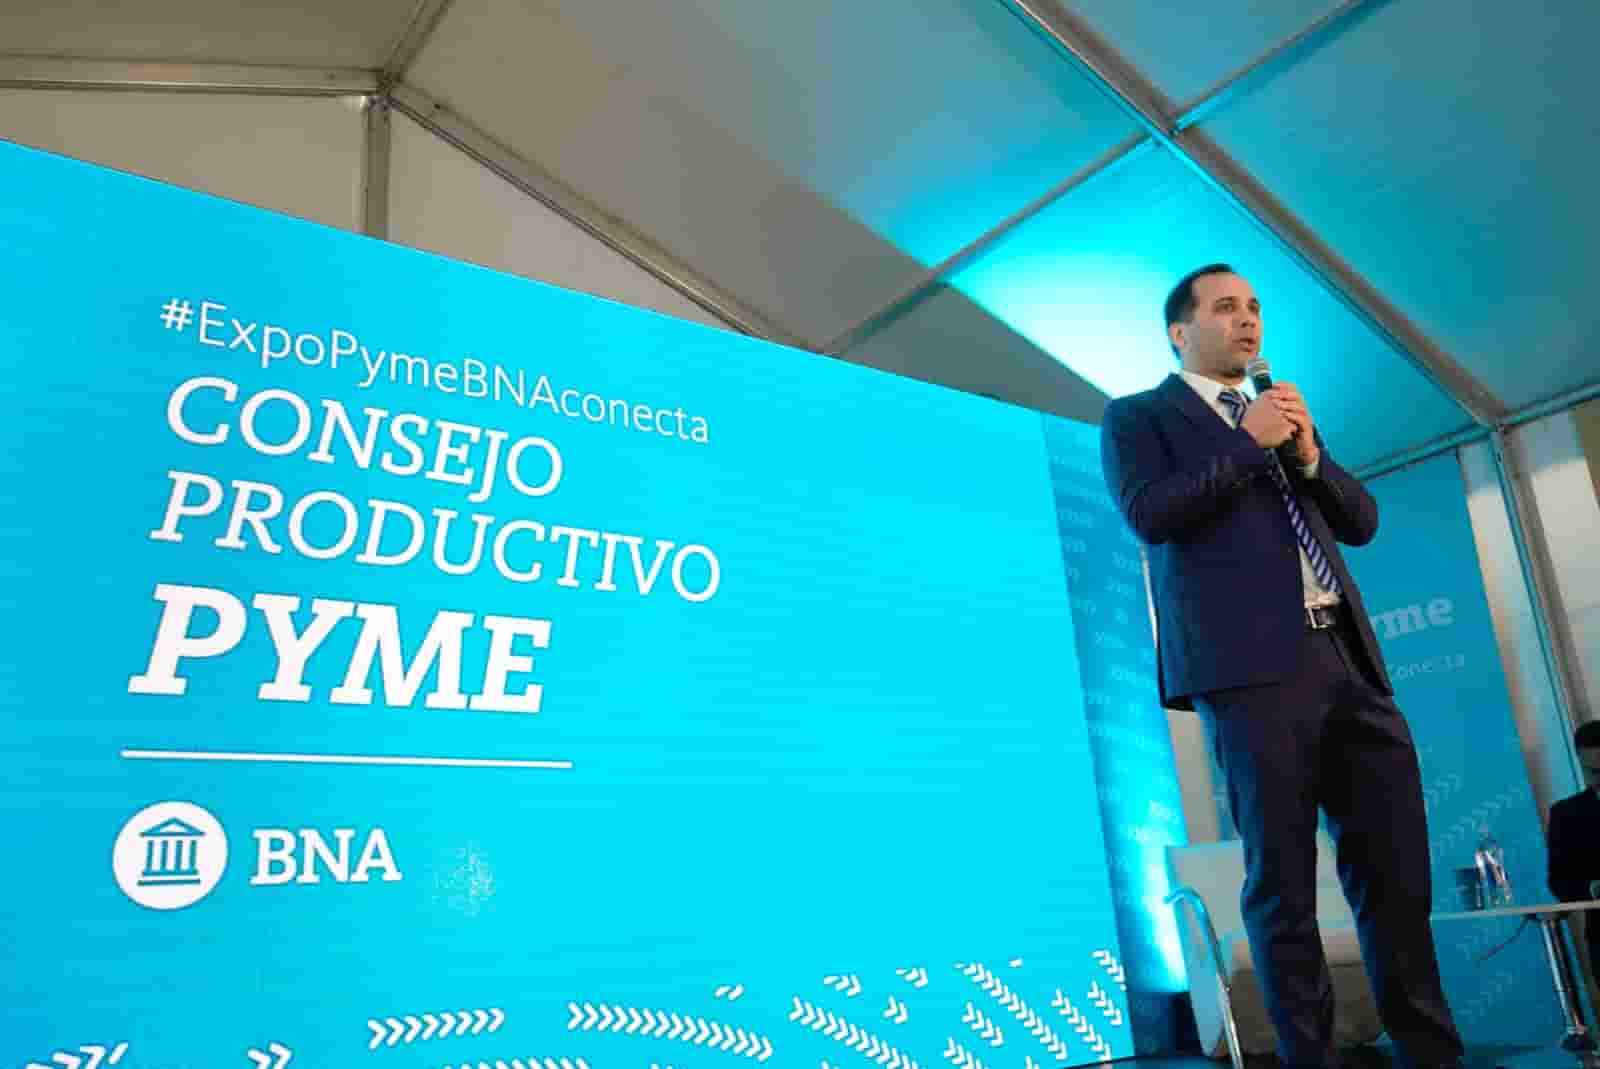 Expo BNA Conecta